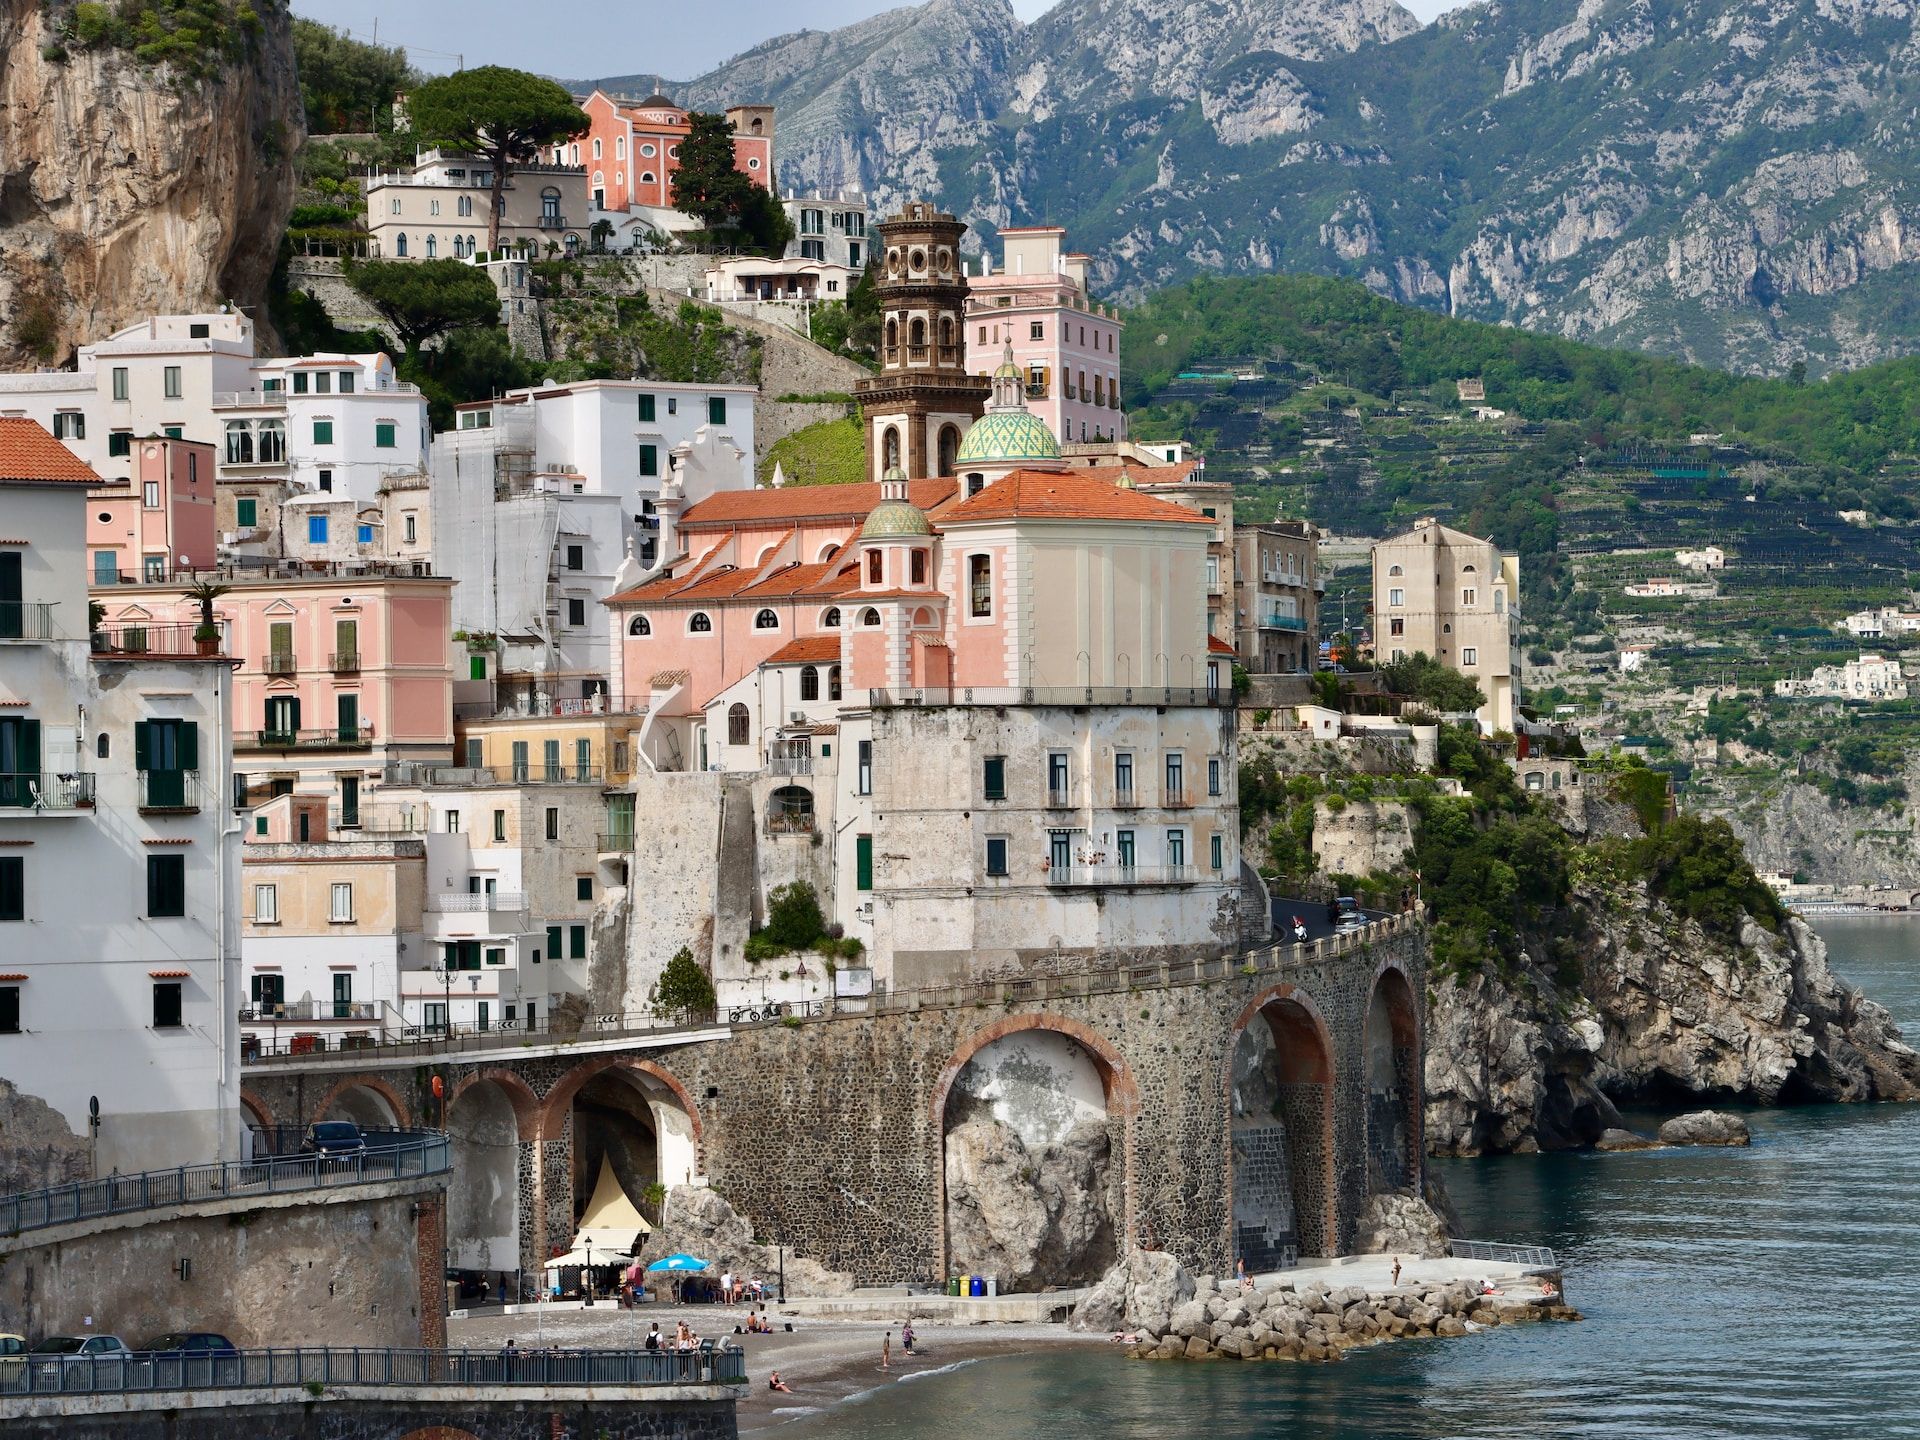 Precious coastal town of Atrani hugs the cliffside in the Amalfi Coast